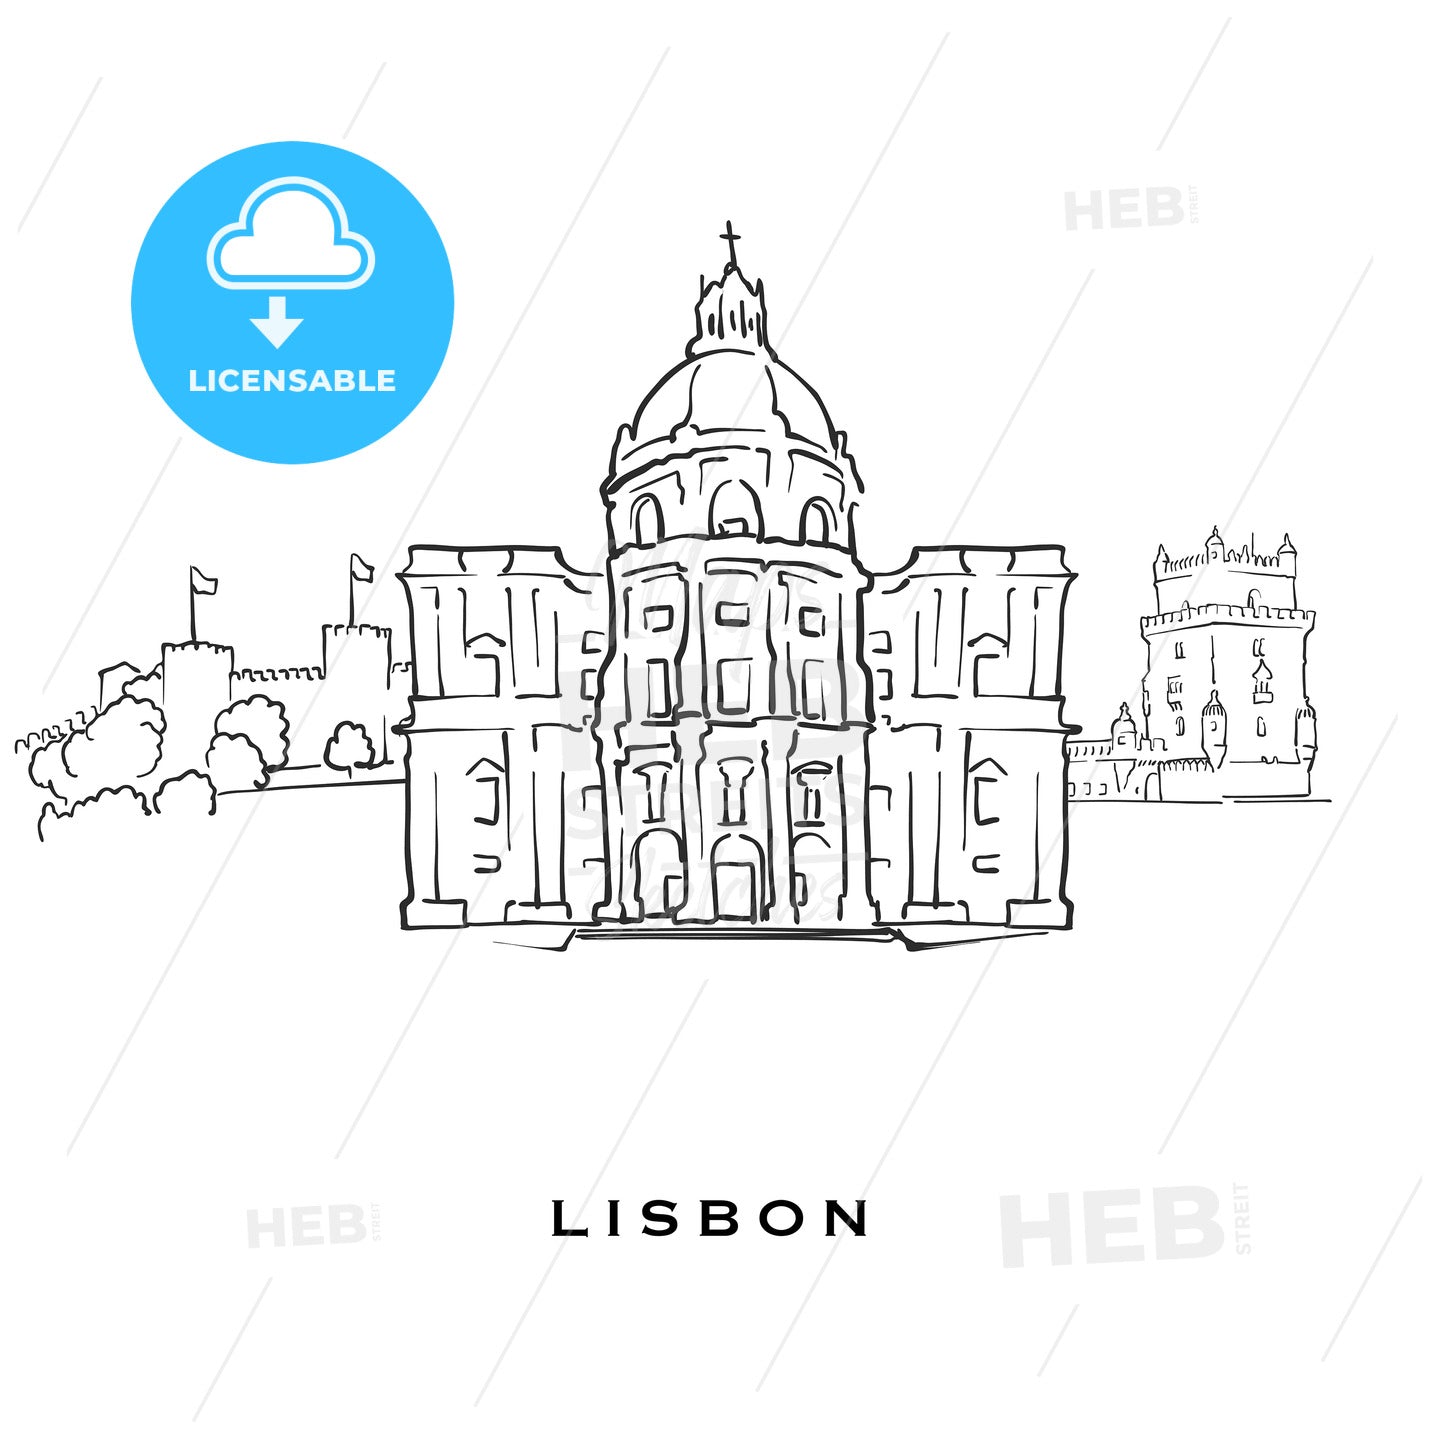 Lisbon Portugal famous architecture – instant download